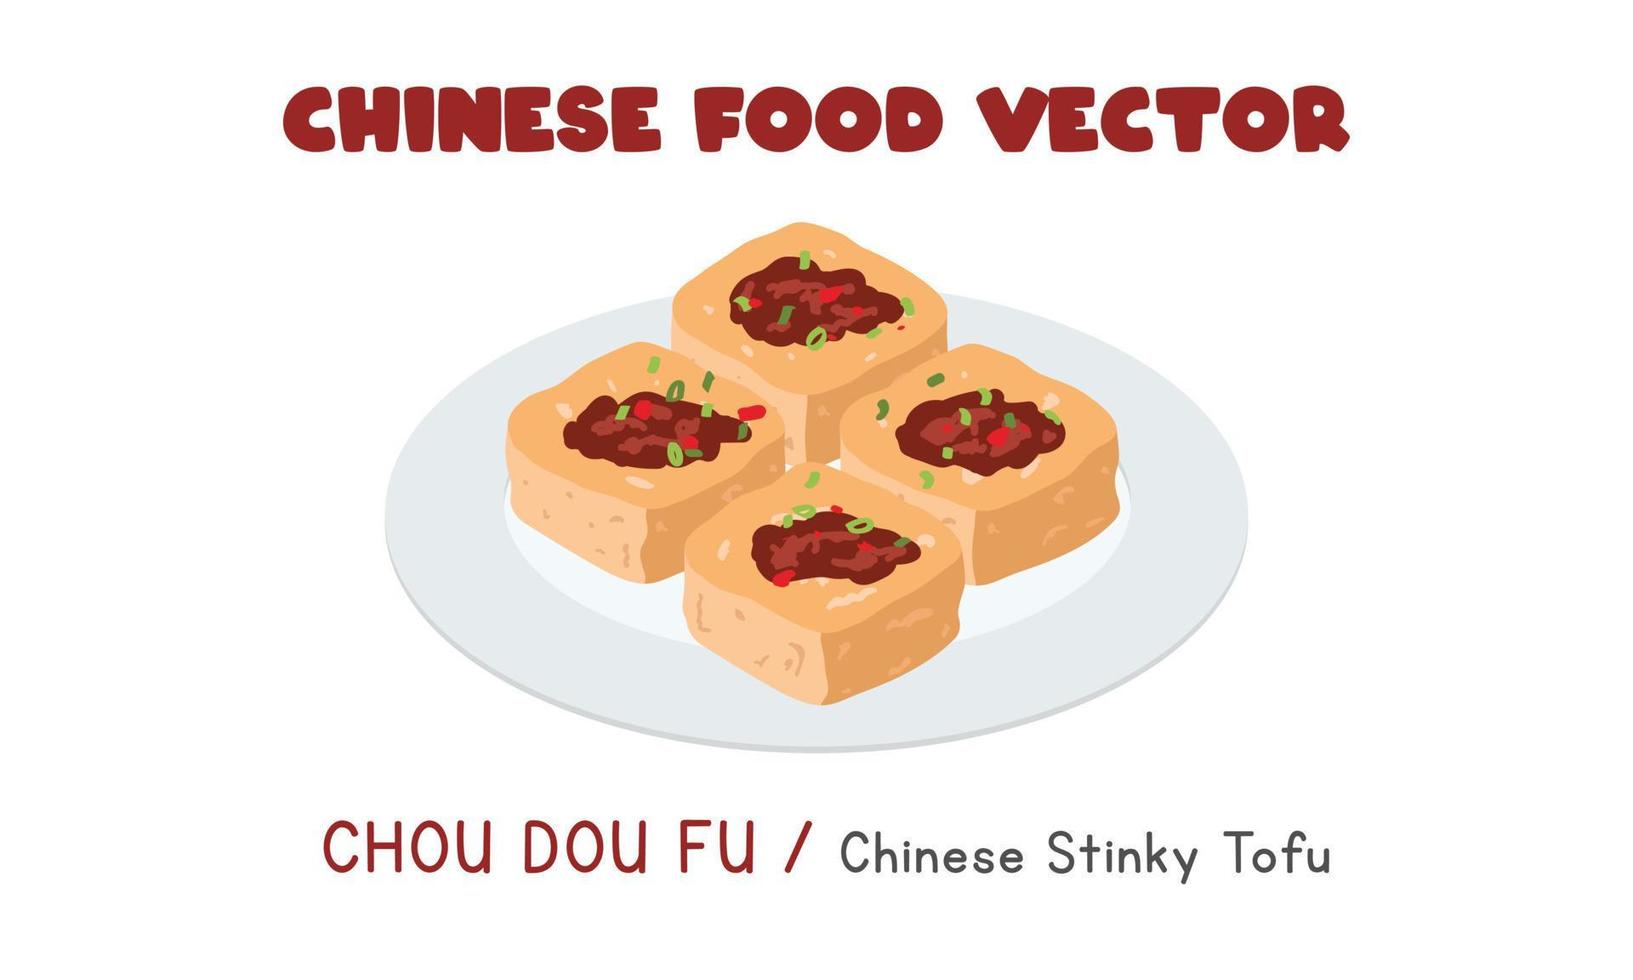 chino chou dou fu - ilustración de diseño de vector plano de tofu apestoso chino, estilo de dibujos animados de imágenes prediseñadas. comida asiática. cocina china. comida china